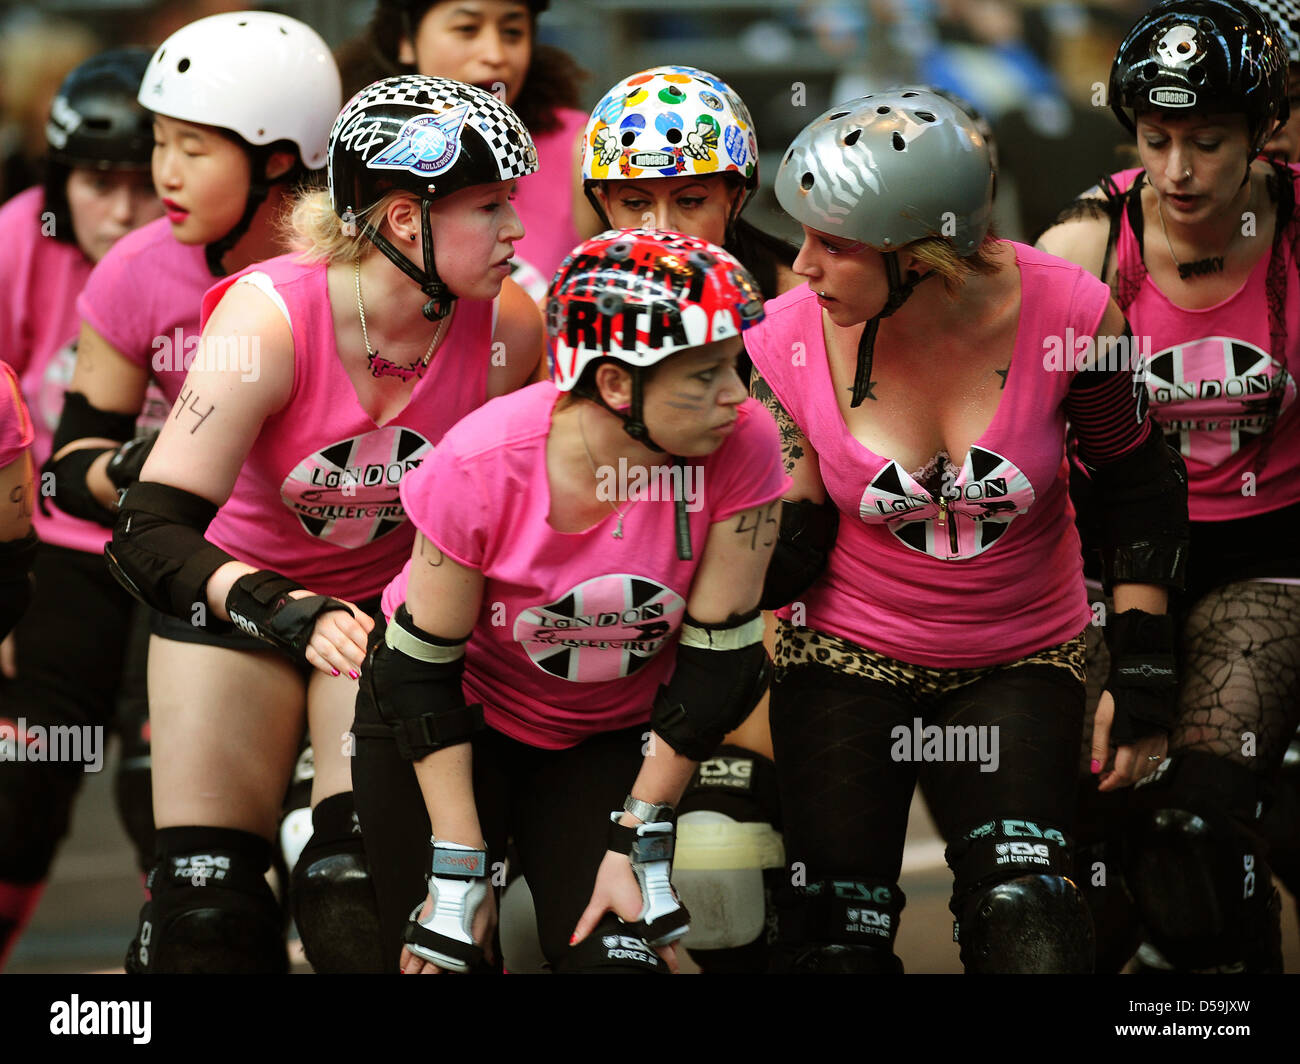 Weibliche Roller Derby-Spieler von der Londoner Team "Brawl Saints" (rosa)  bereiten sich auf ein Spiel gegen die "Berlin Bombshells" in Berlin,  Deutschland am 26. Juni 2010. Roller Derby ist eine vollständige  Kontakt-Sport